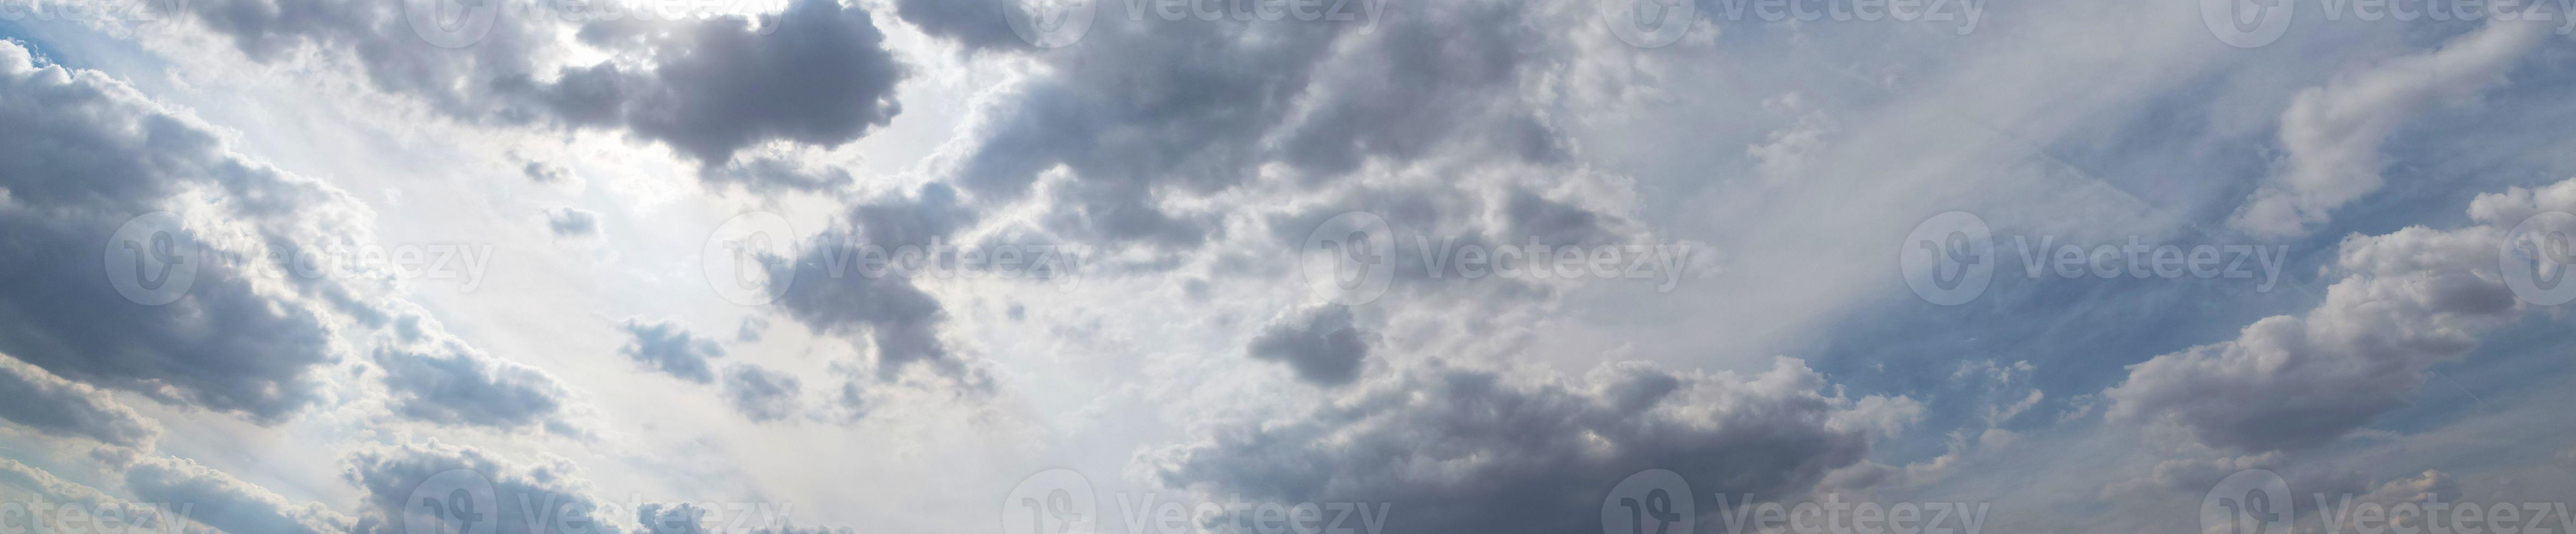 dramatisk moln och himmel på dunstabil nedgångar av England Storbritannien foto